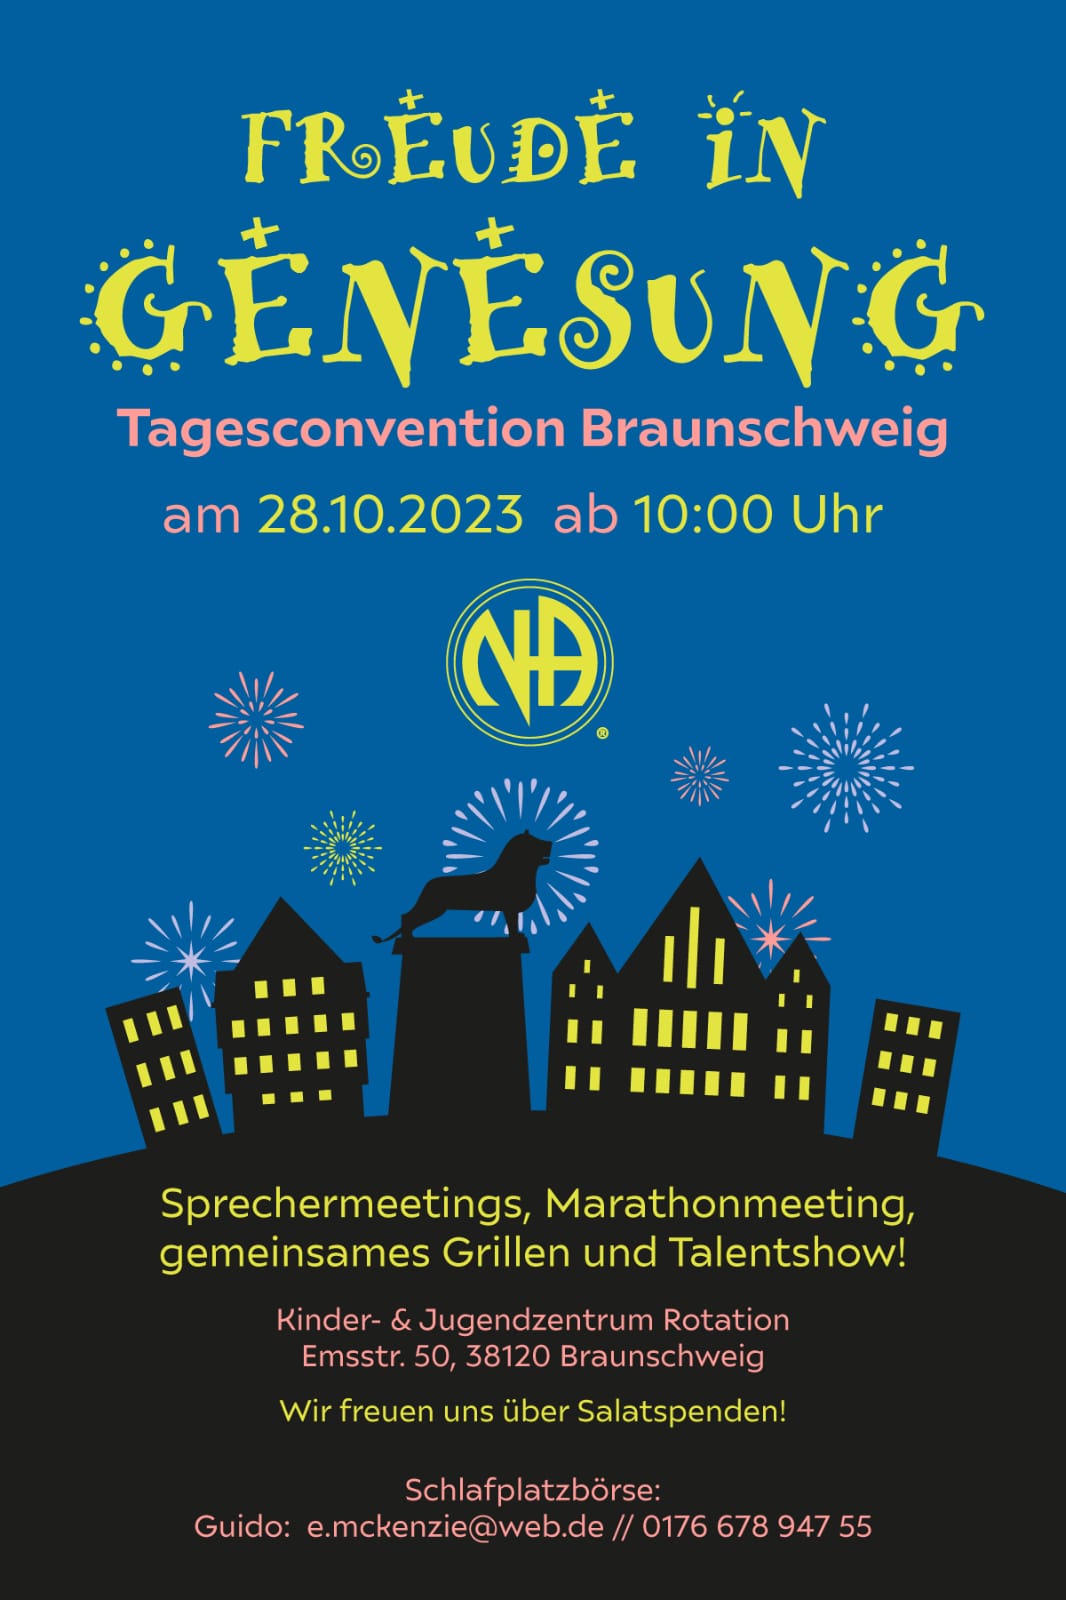 Tagesconvention Braunschweig - "Freude in Genesung"